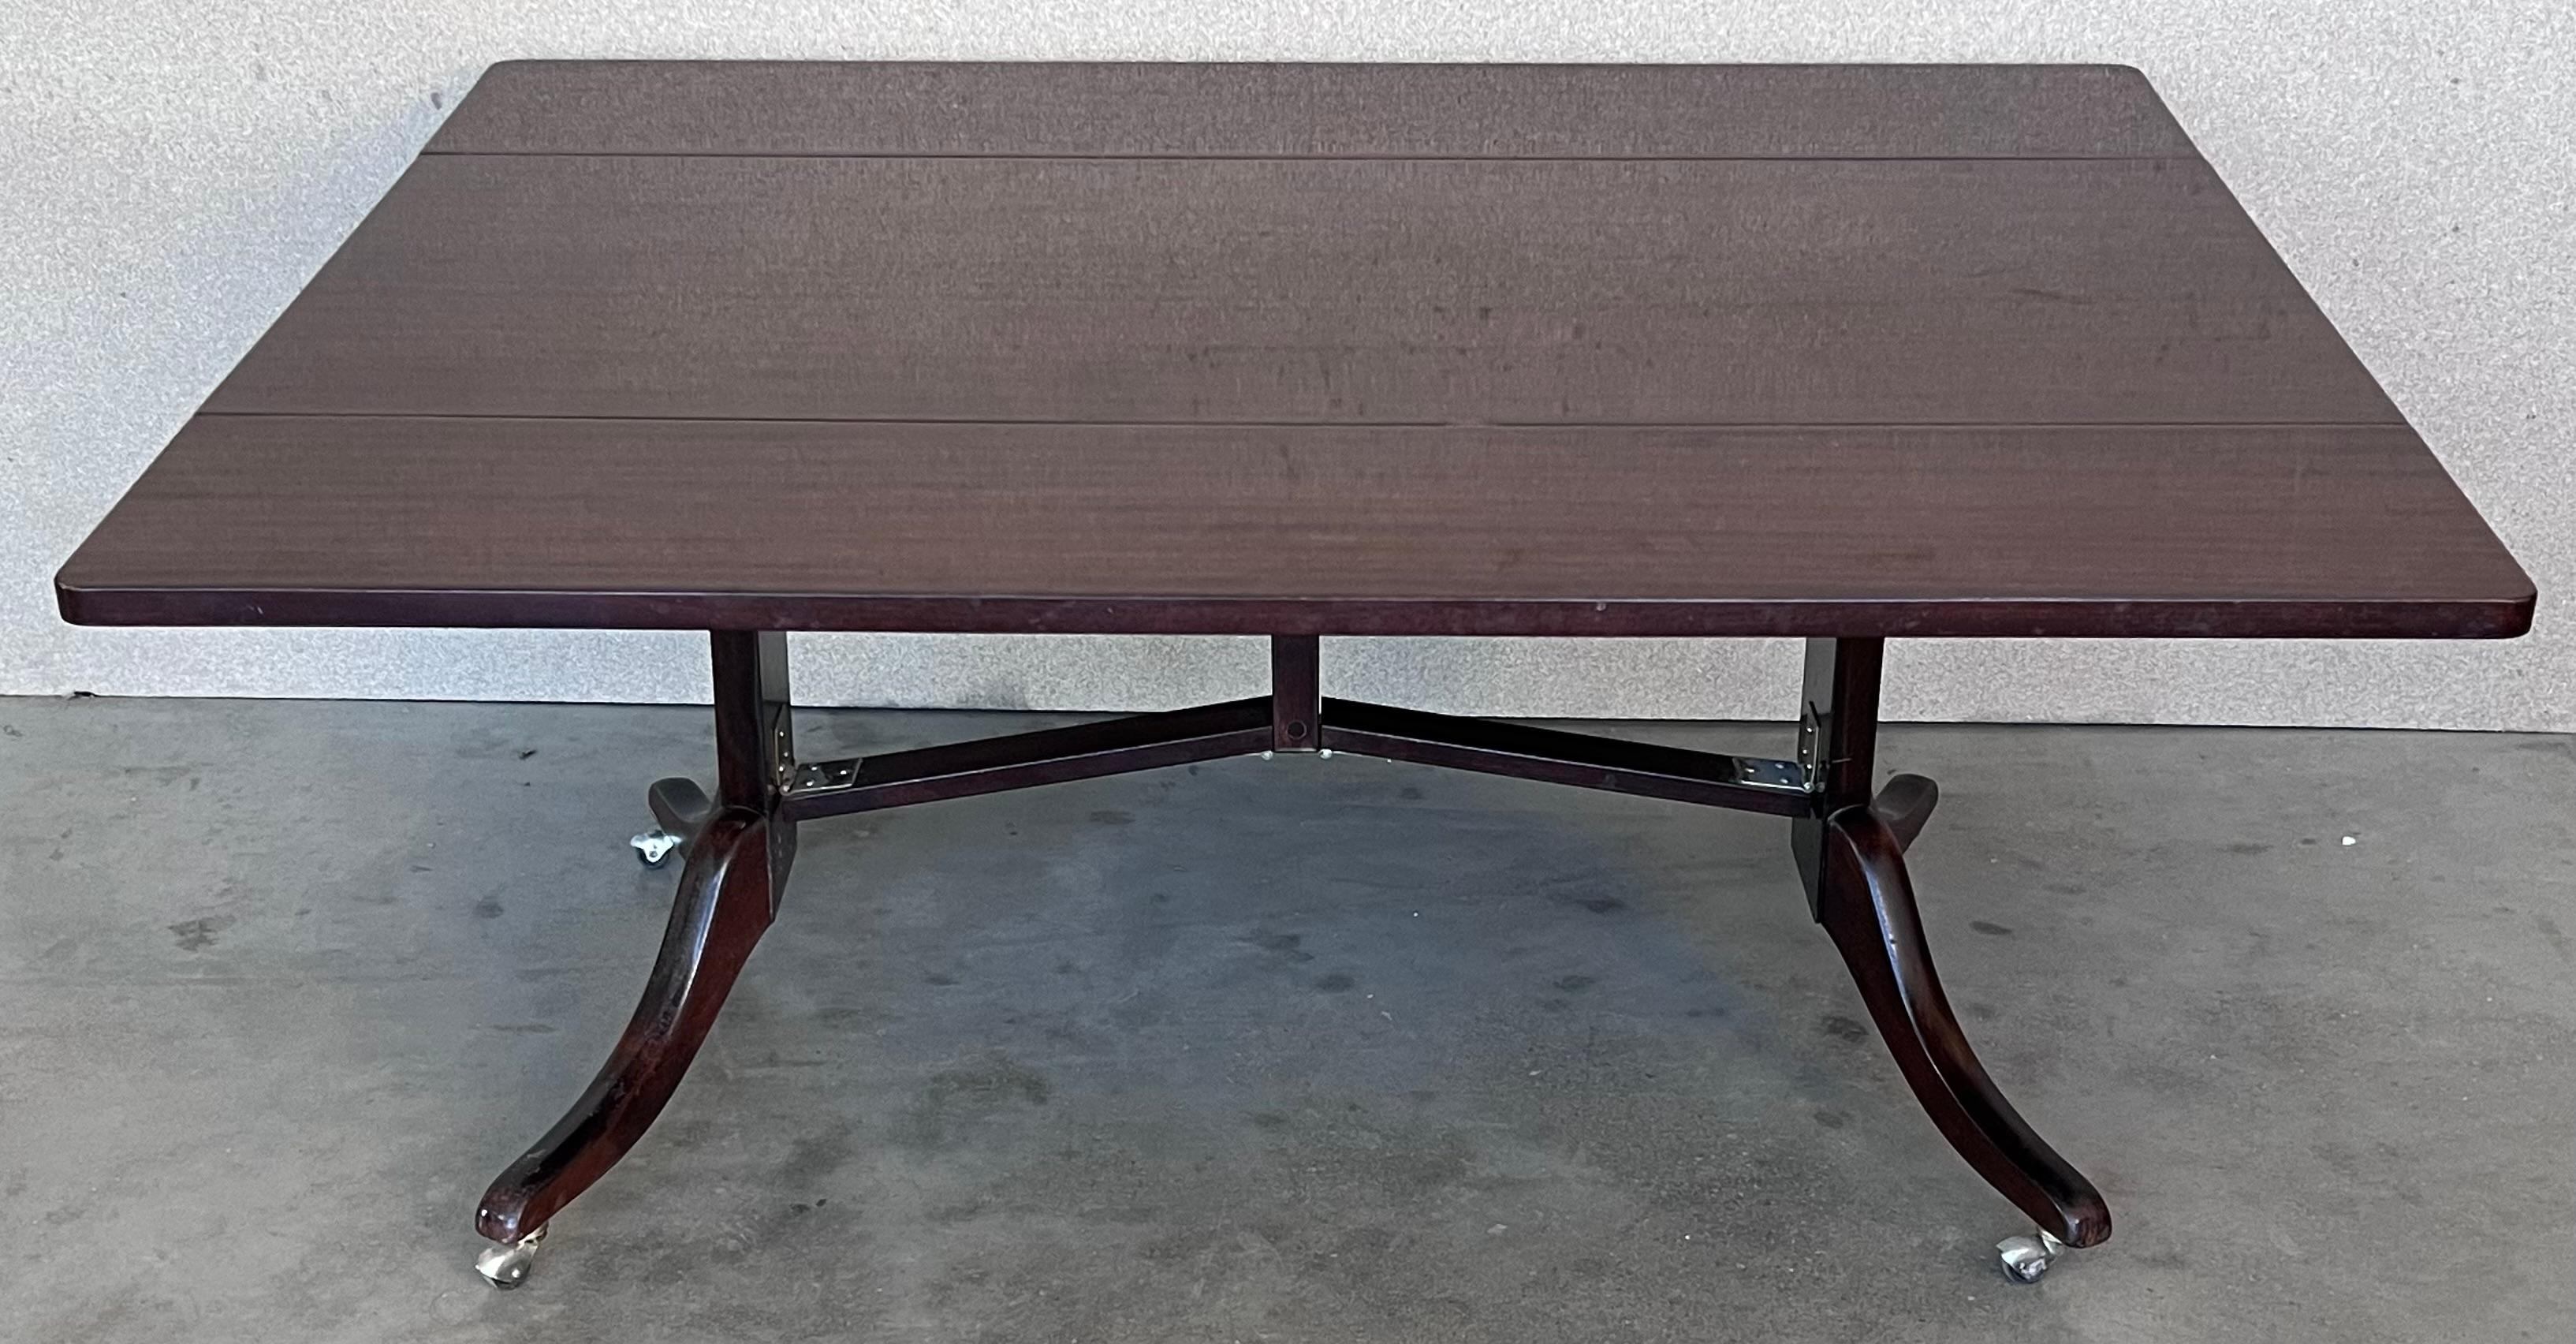 Table de salle à manger convertible et relevable avec feuilles pliantes. 

Vous pouvez utiliser cette table comme une table basse ou une table de salle à manger. La table a un mécanisme moderne breveté de cette période qui permet de monter et